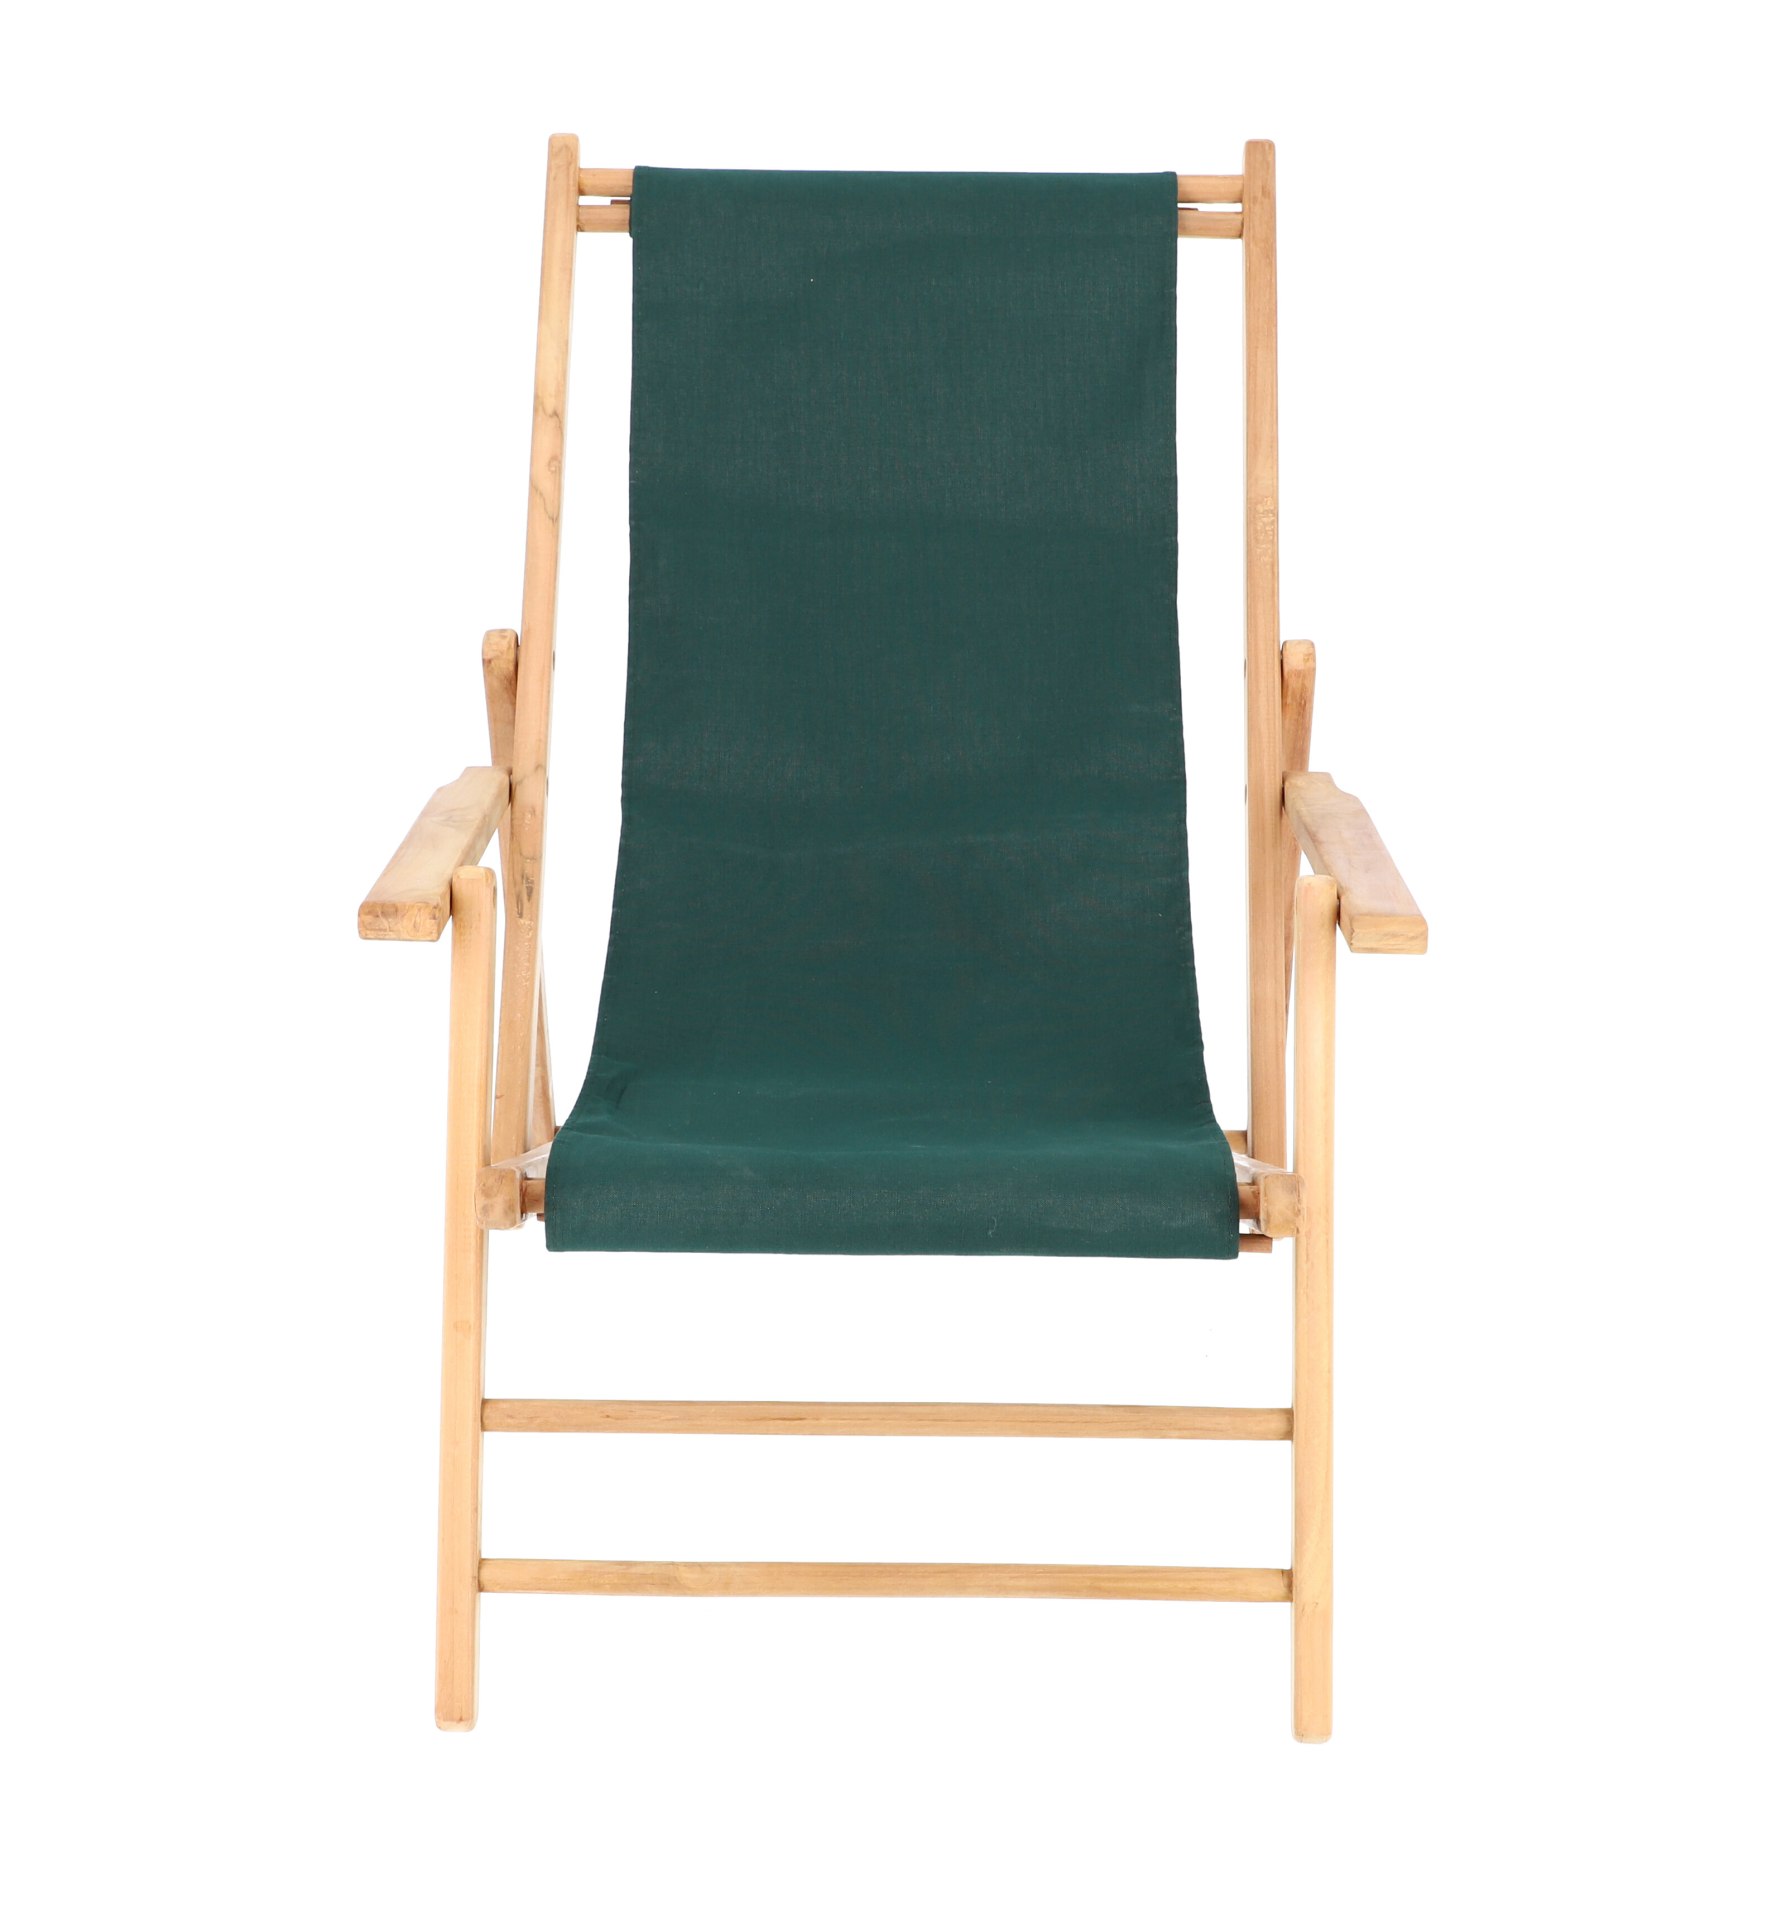 Der Liegestuhl Maxx wurde aus Teakholz gefertigt. Der Bezug ist in verschiedenen Farben erhältlich. Das schlichte Design der Marke Jan Kurtz überzeugt und lässt die Liege zu einem echten Hingucker werden.